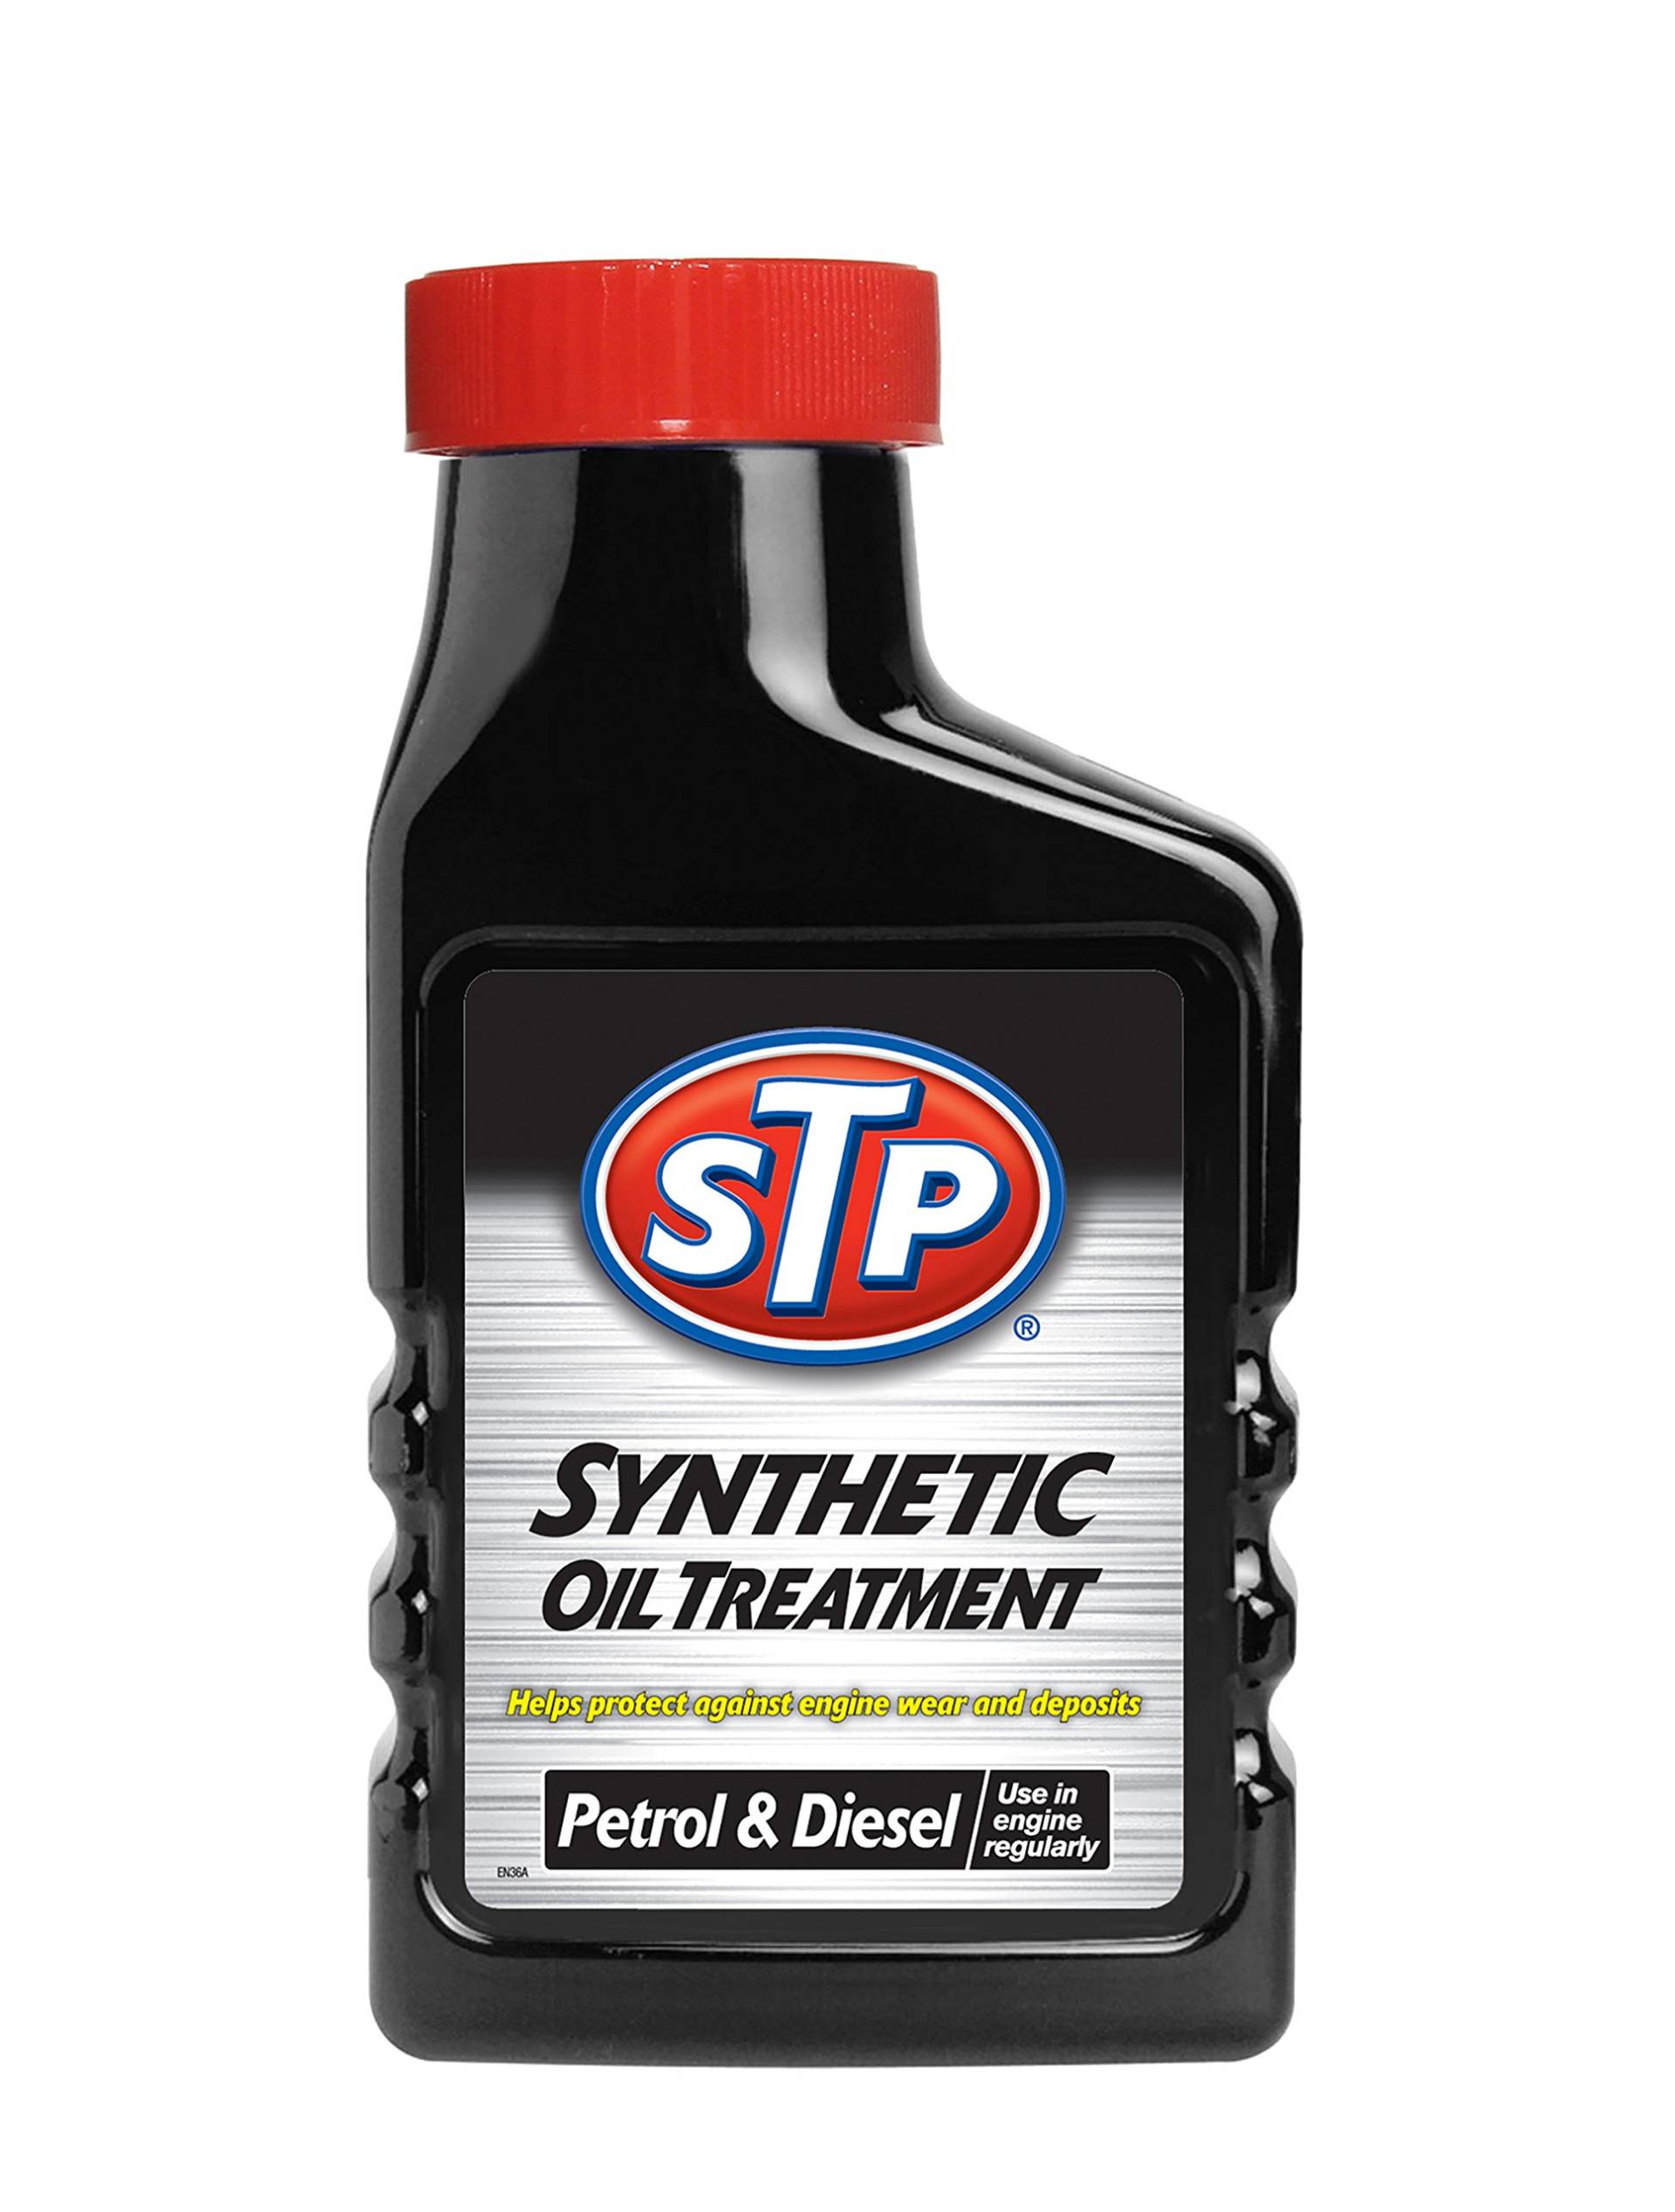 STP Synthetische Ölbehandlung für Benzin- und Dieselmotoren 300 ml, schützt vor Motorverschleiß, reduziert Pistolenablagerungen und Ölverbrauch, mechanische Auto-Reinigungsprodukte, hergestellt in von STP